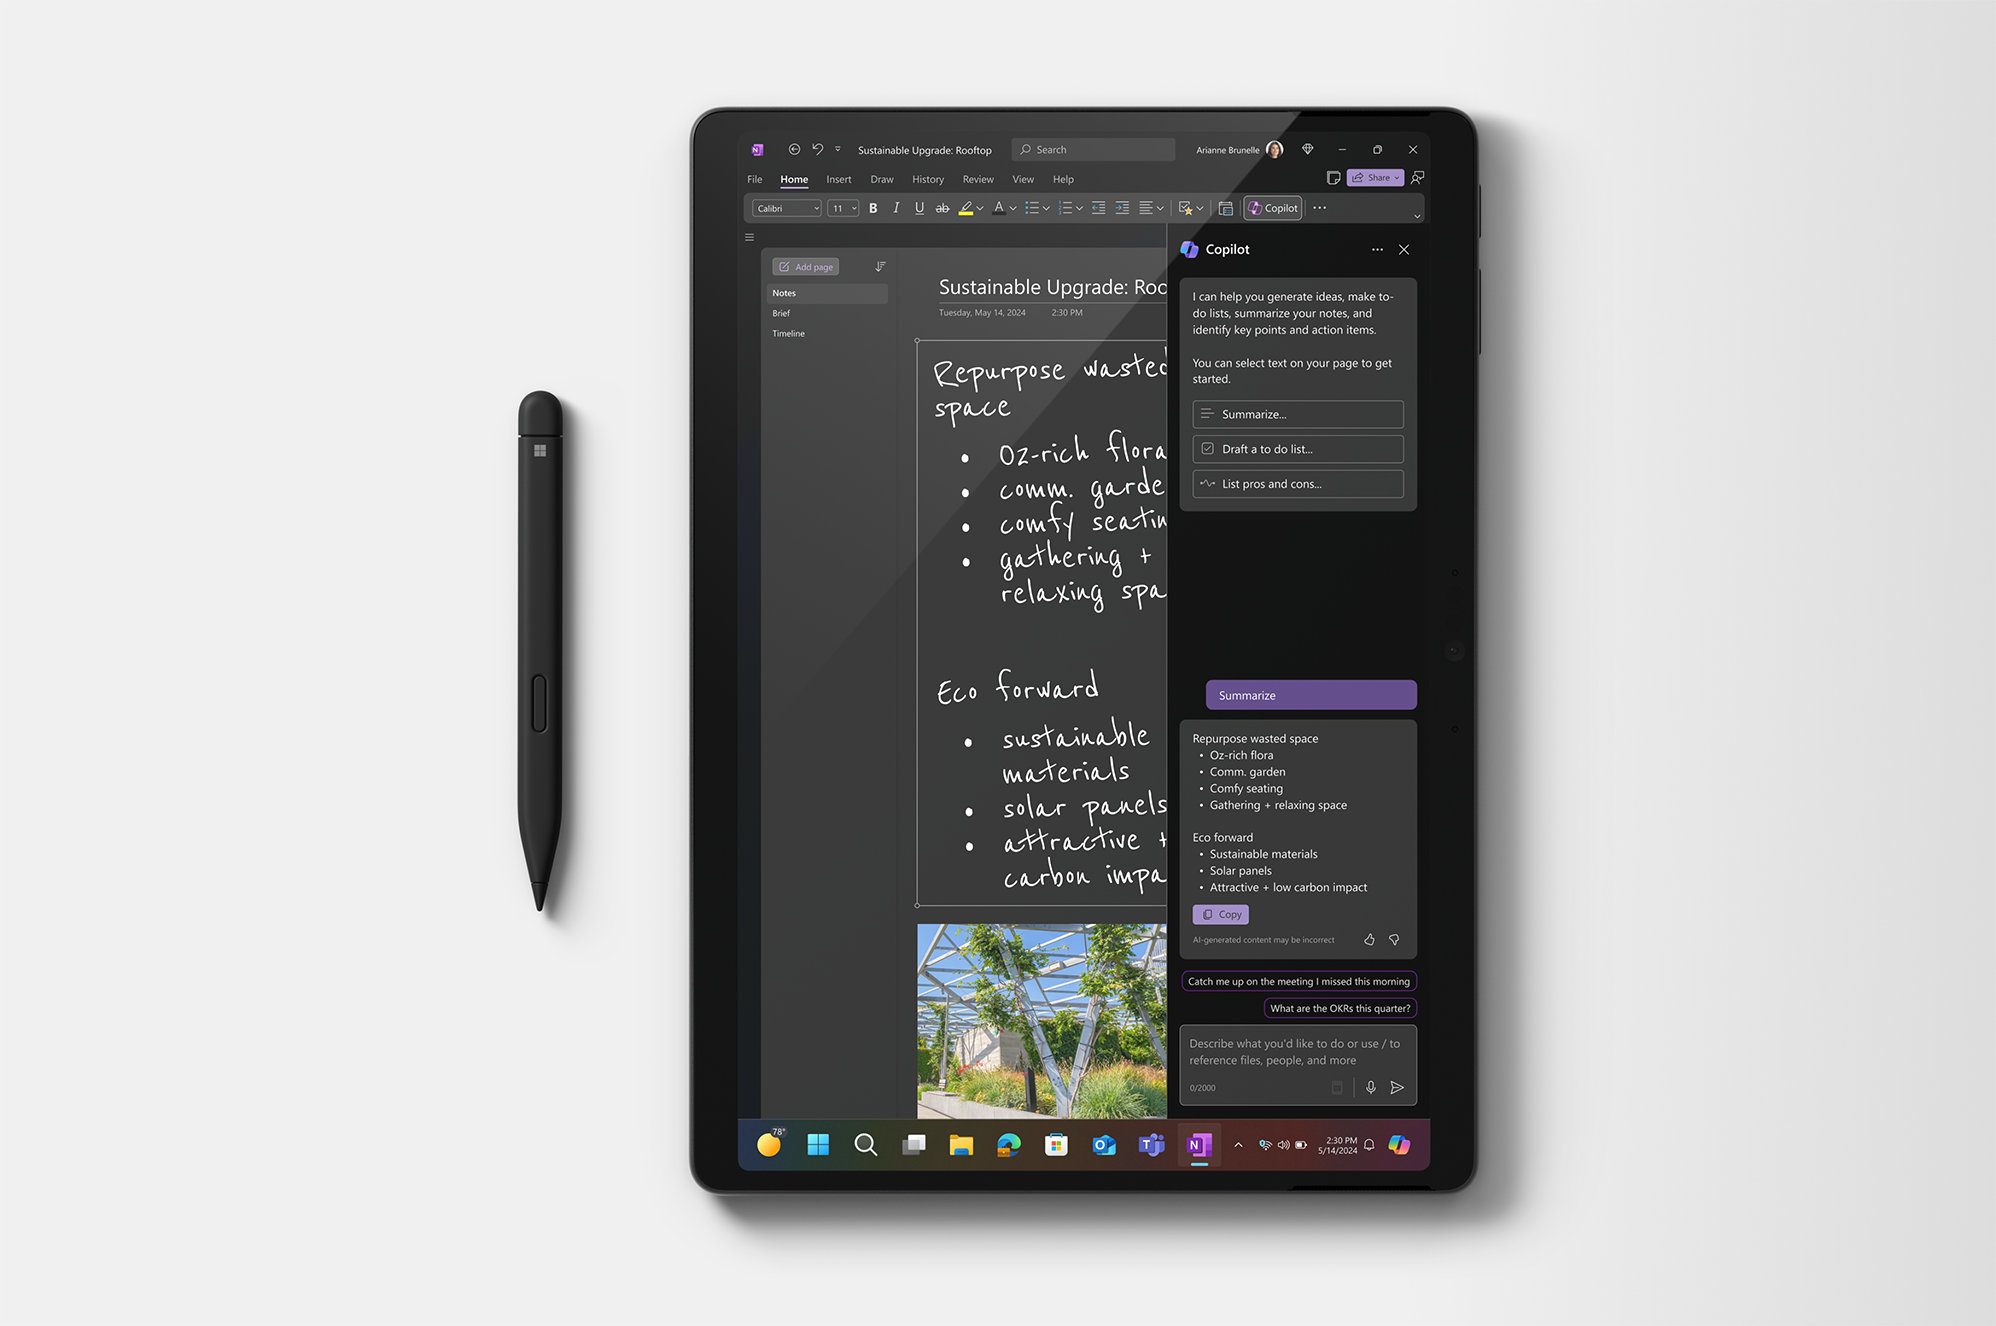 影像顯示 Surface Pro 採用平板電腦模式，並且 Surface 超薄手寫筆放在影像左側。